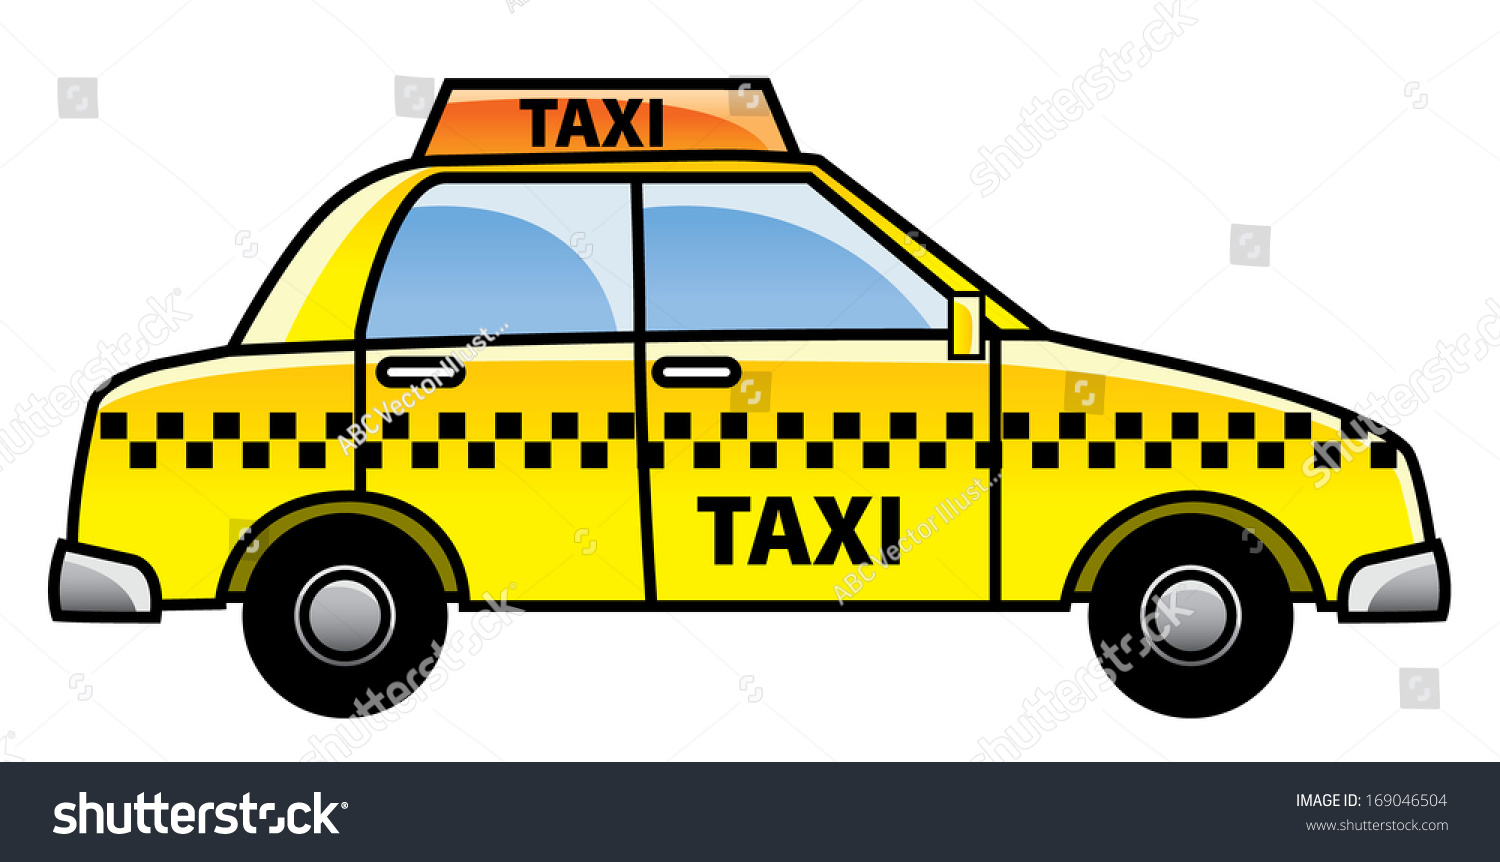 Taxi Cartoon Illustration - 169046504 : Shutterstock